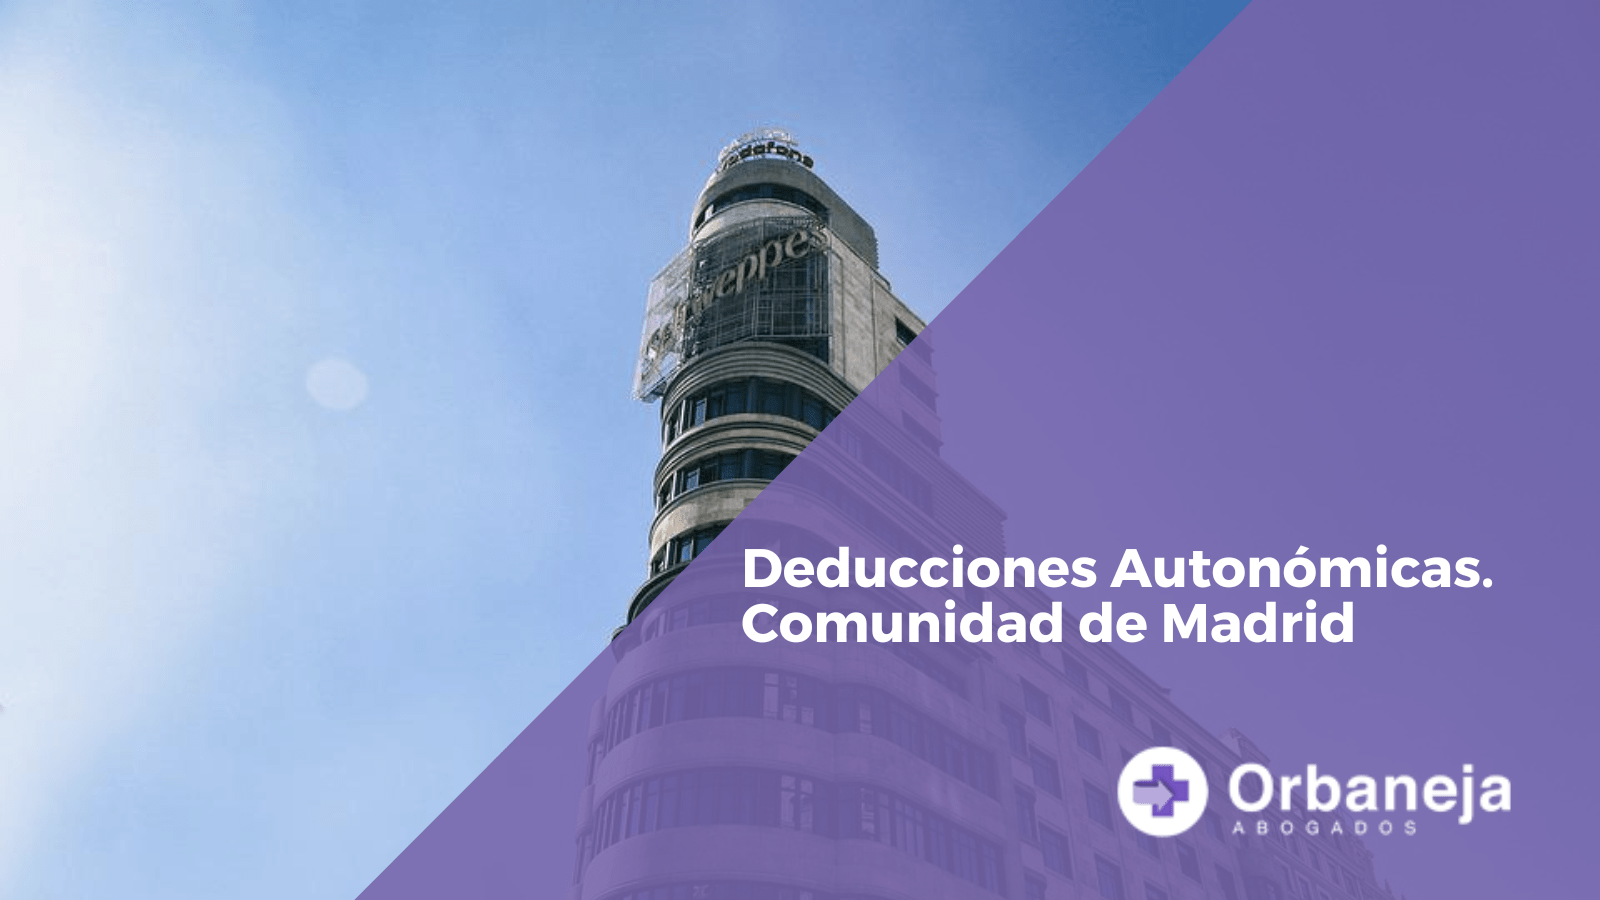 Deducciones Autonómicas. Comunidad de Madrid